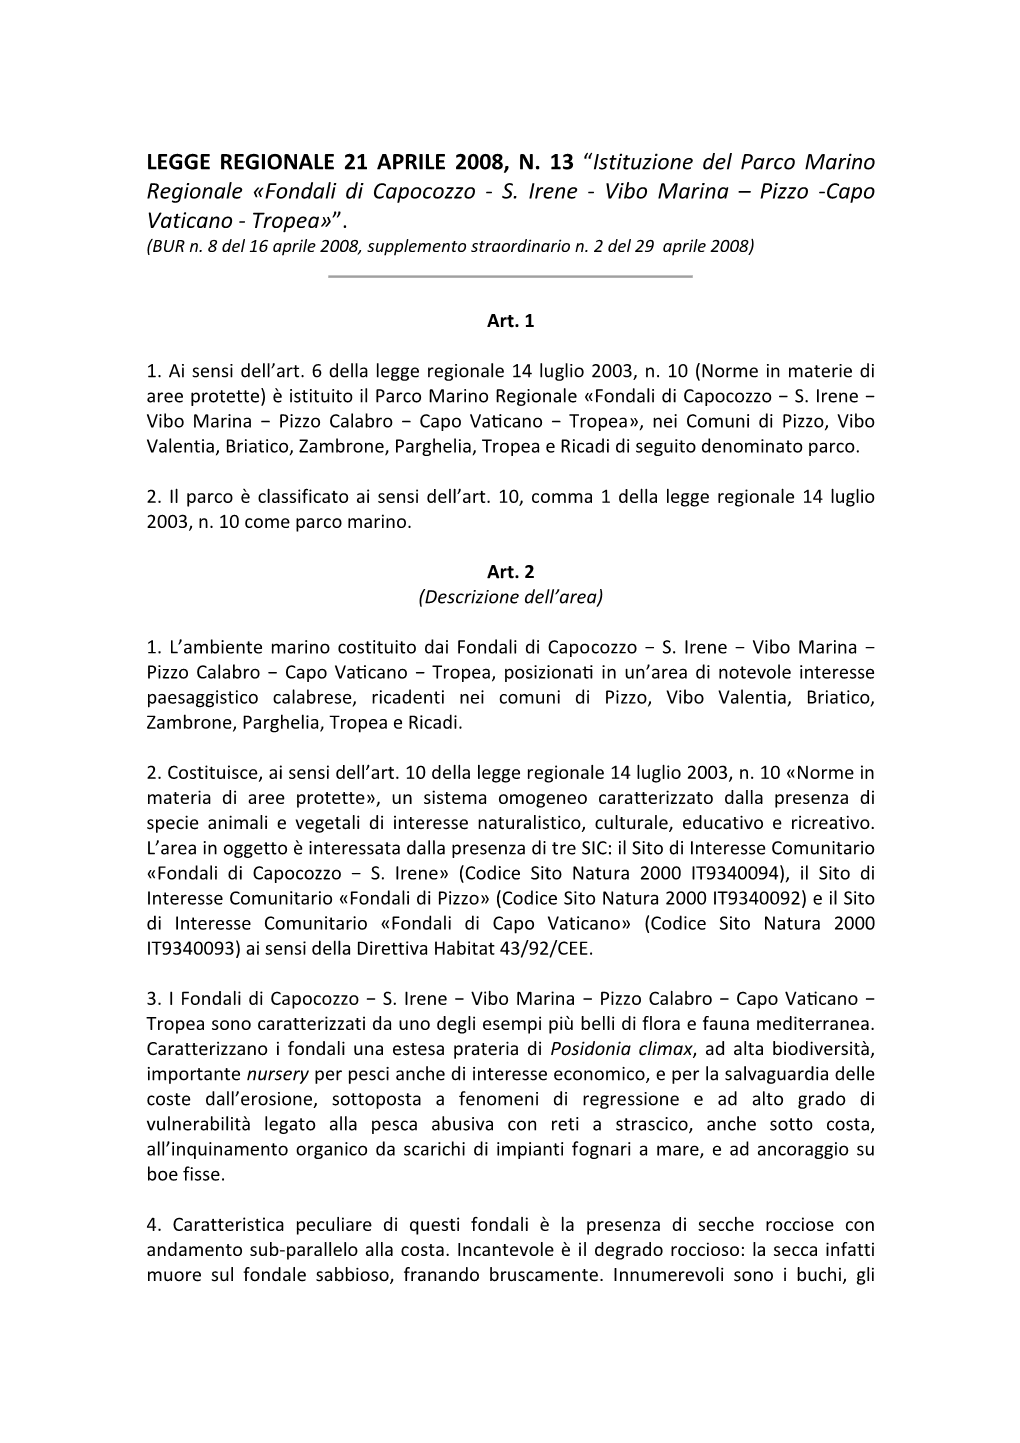 LEGGE REGIONALE 21 APRILE 2008, N. 13 “Istituzione Del Parco Marino Regionale Fondali Di Capocozzo